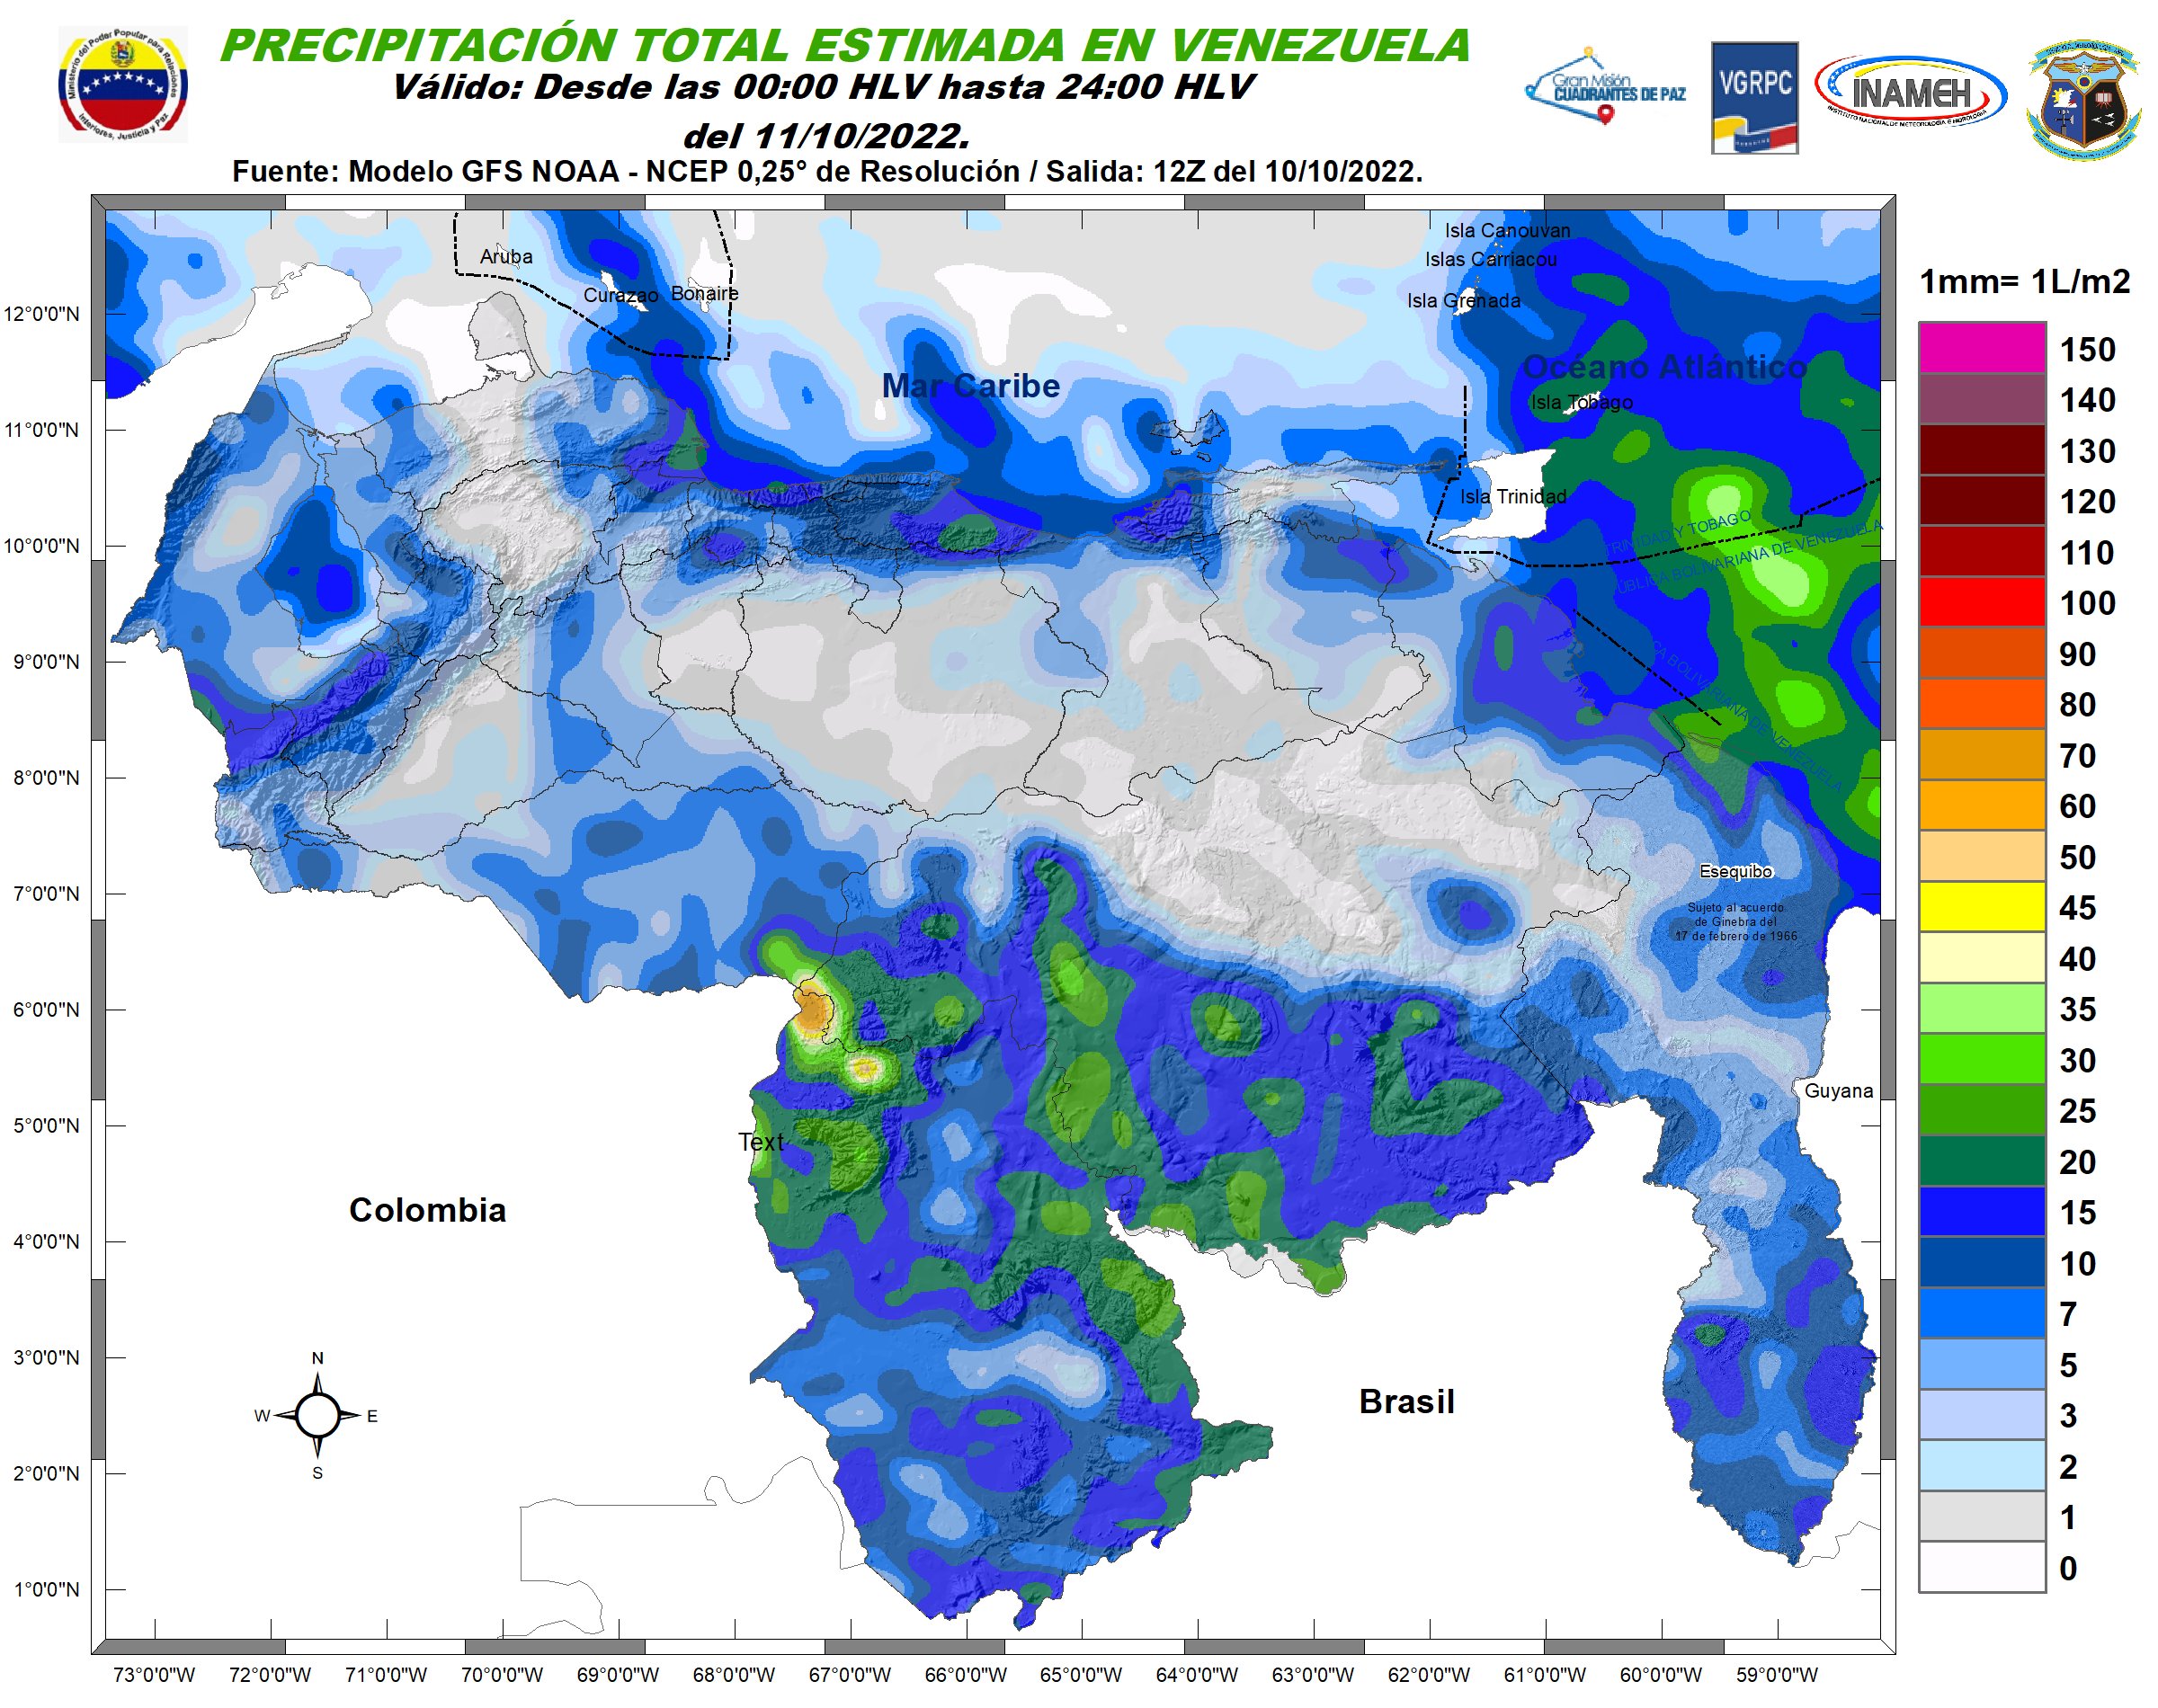 Inameh pronosticó nubosidad, lluvias y chubascos en varios estados de Venezuela #11Oct